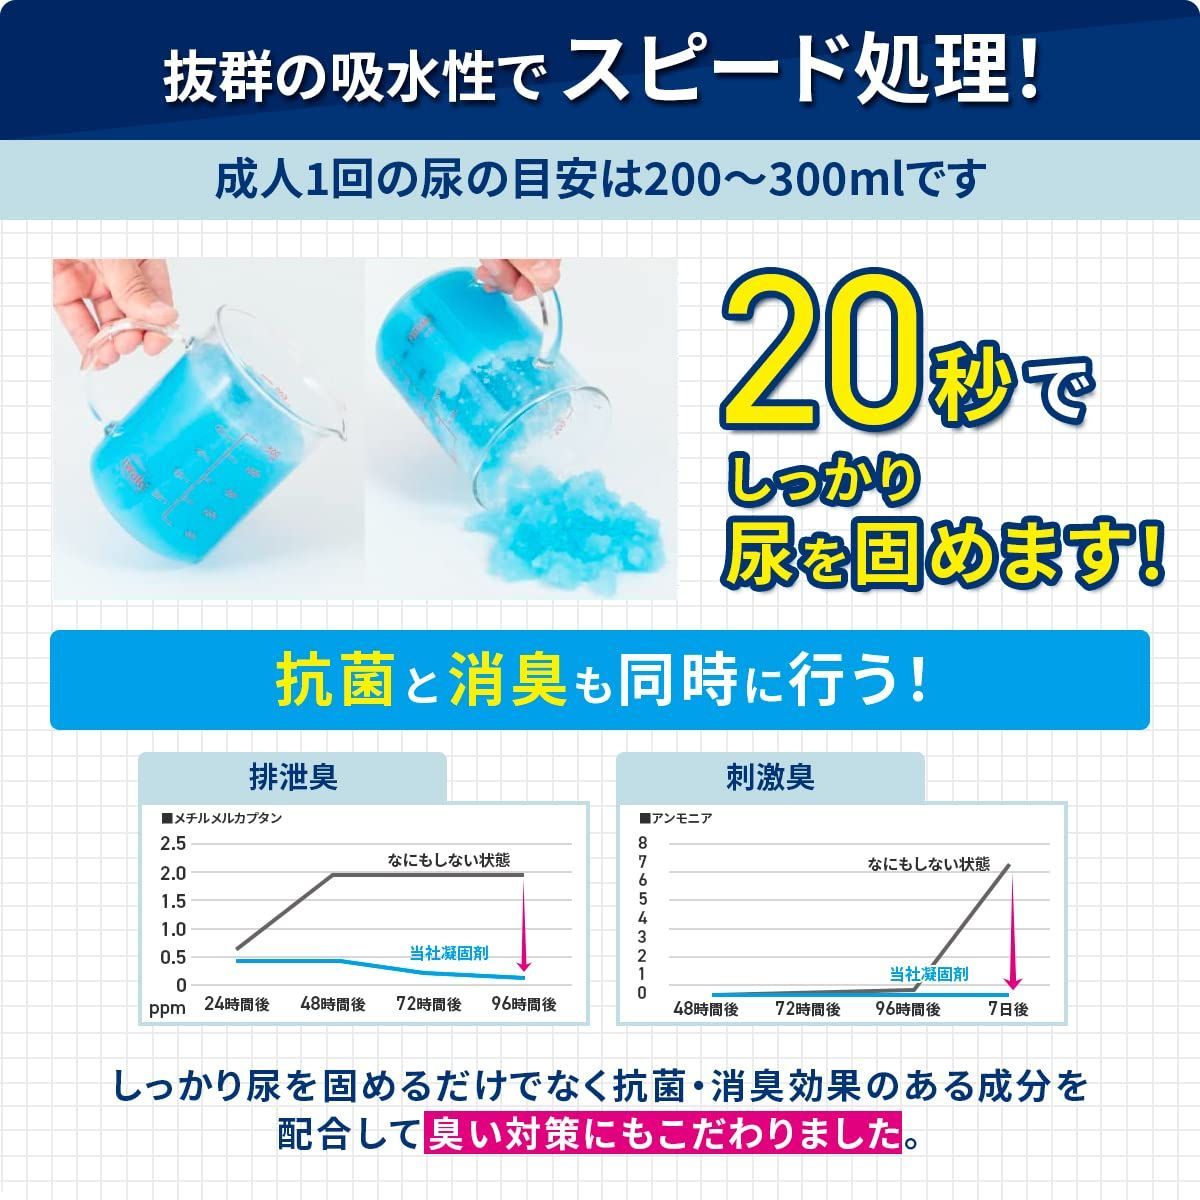 ポイレ 携帯トイレ 1回分個包装 抗菌 防災 日本製 15年保存 消臭凝固剤